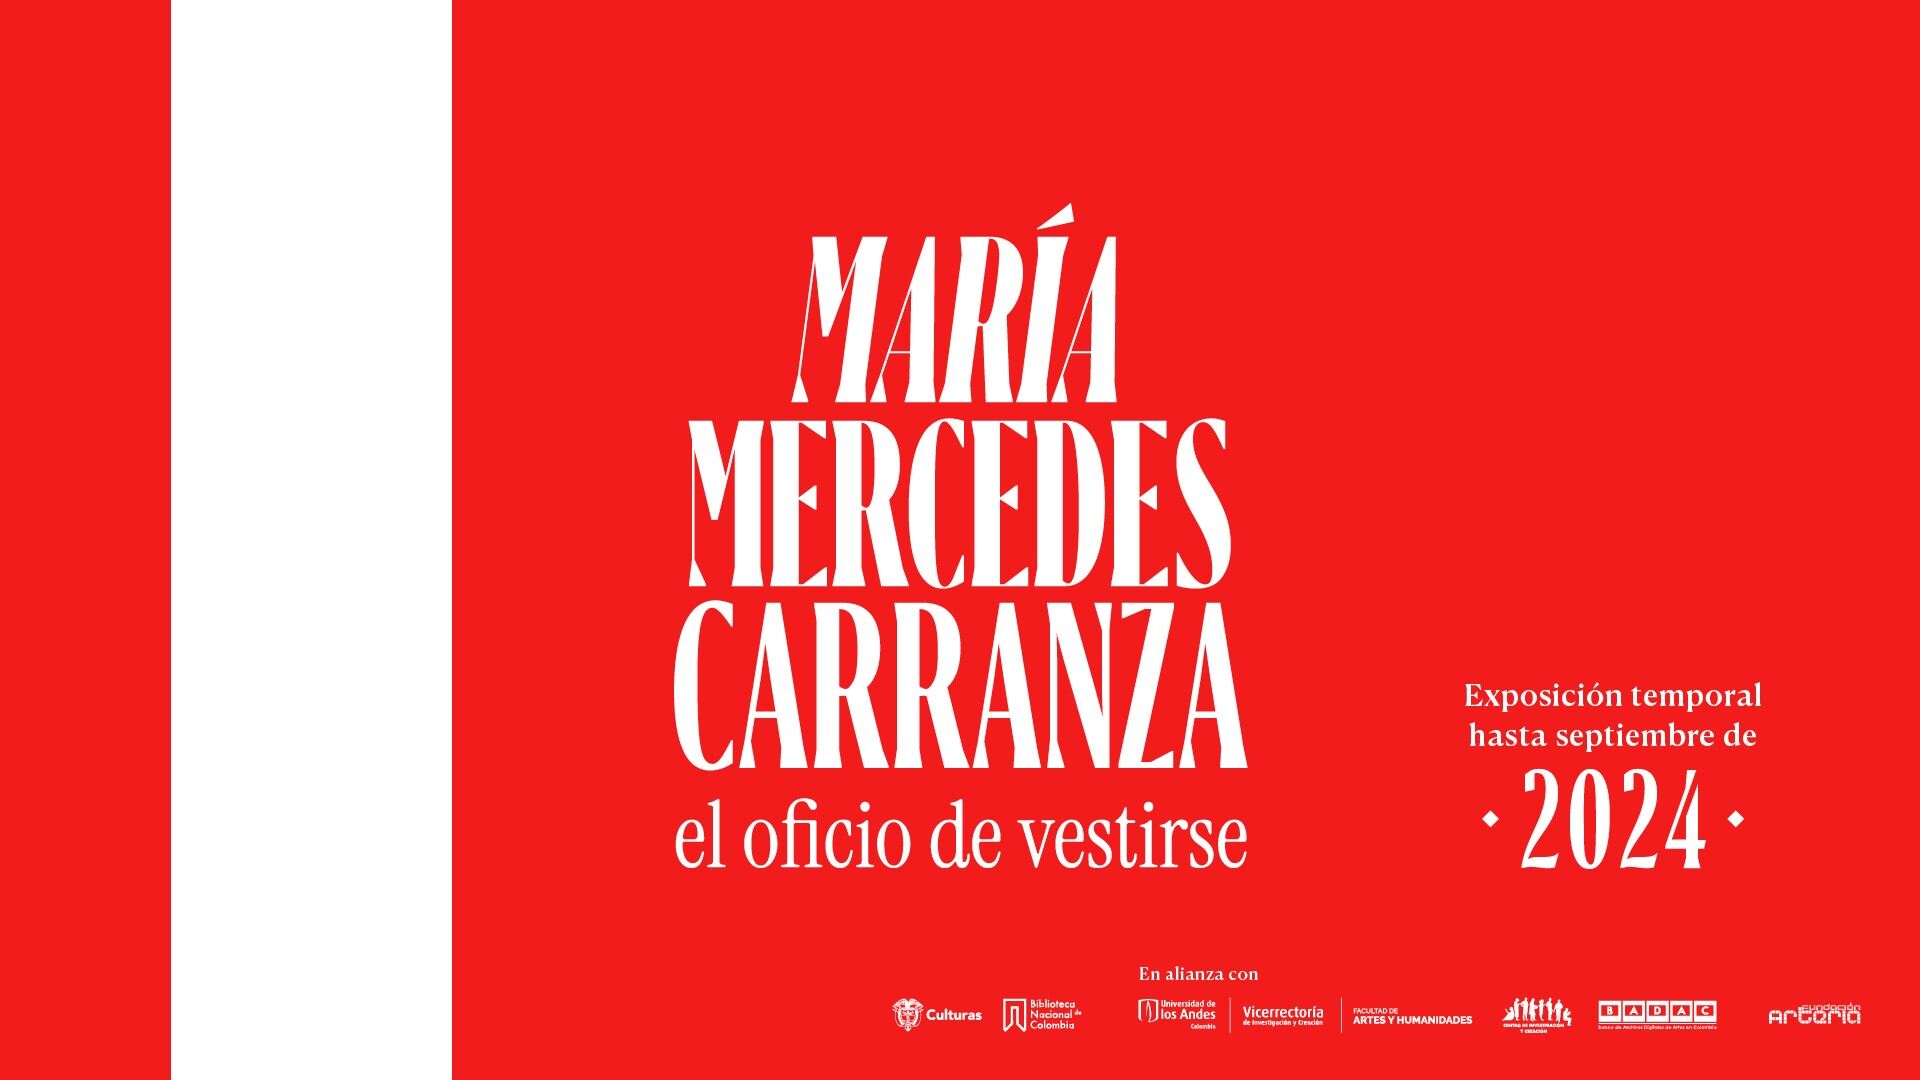 La exposición ‘María Mercedes Carranza, el oficio de vestirse’ llega a la Biblioteca Nacional de Colombia